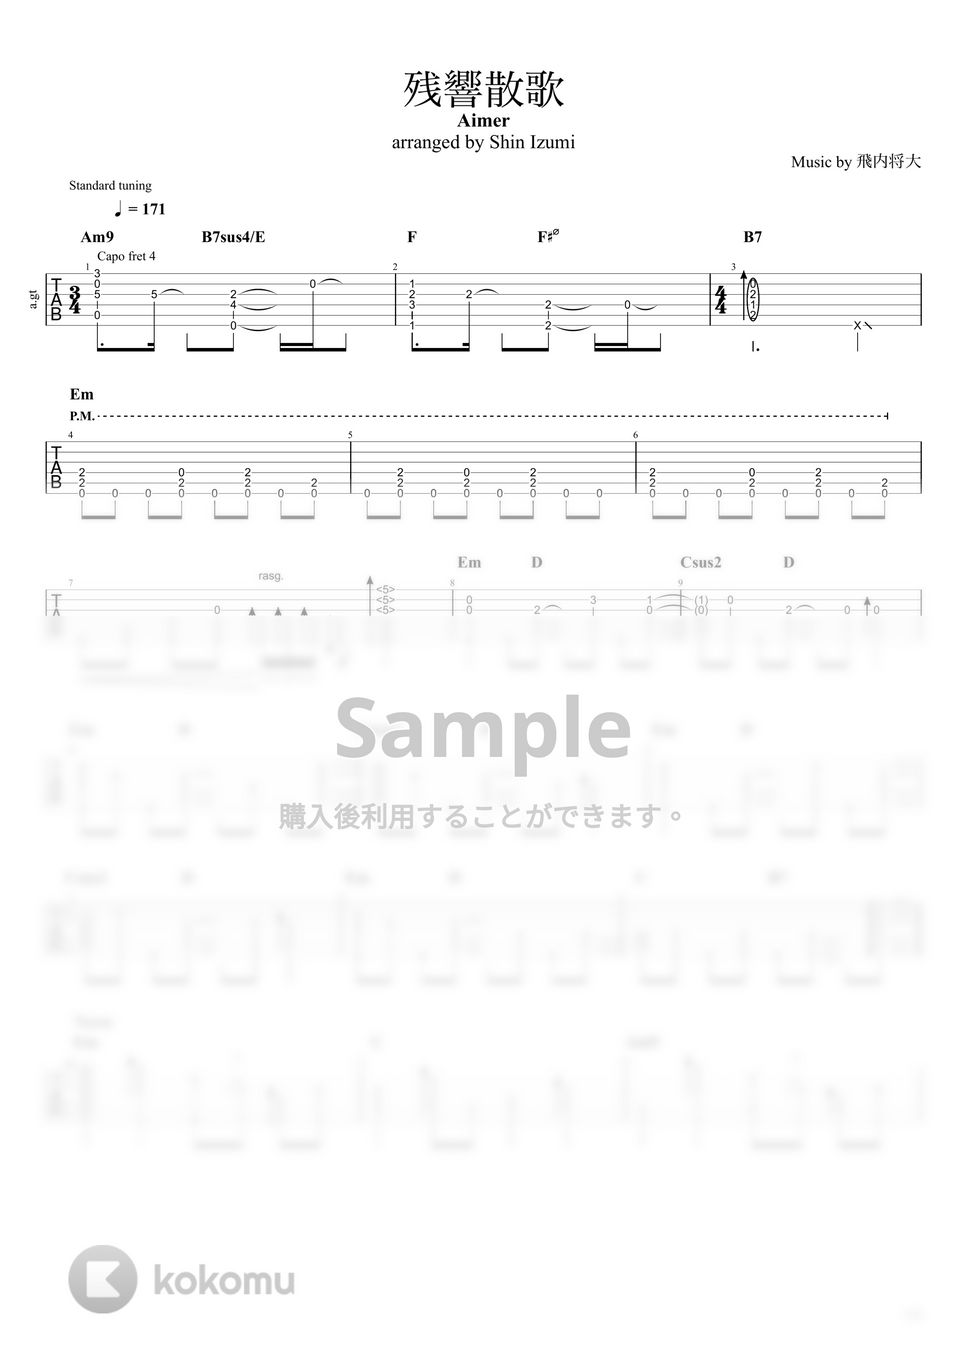 Aimer - 残響散歌 by Shin Izumi